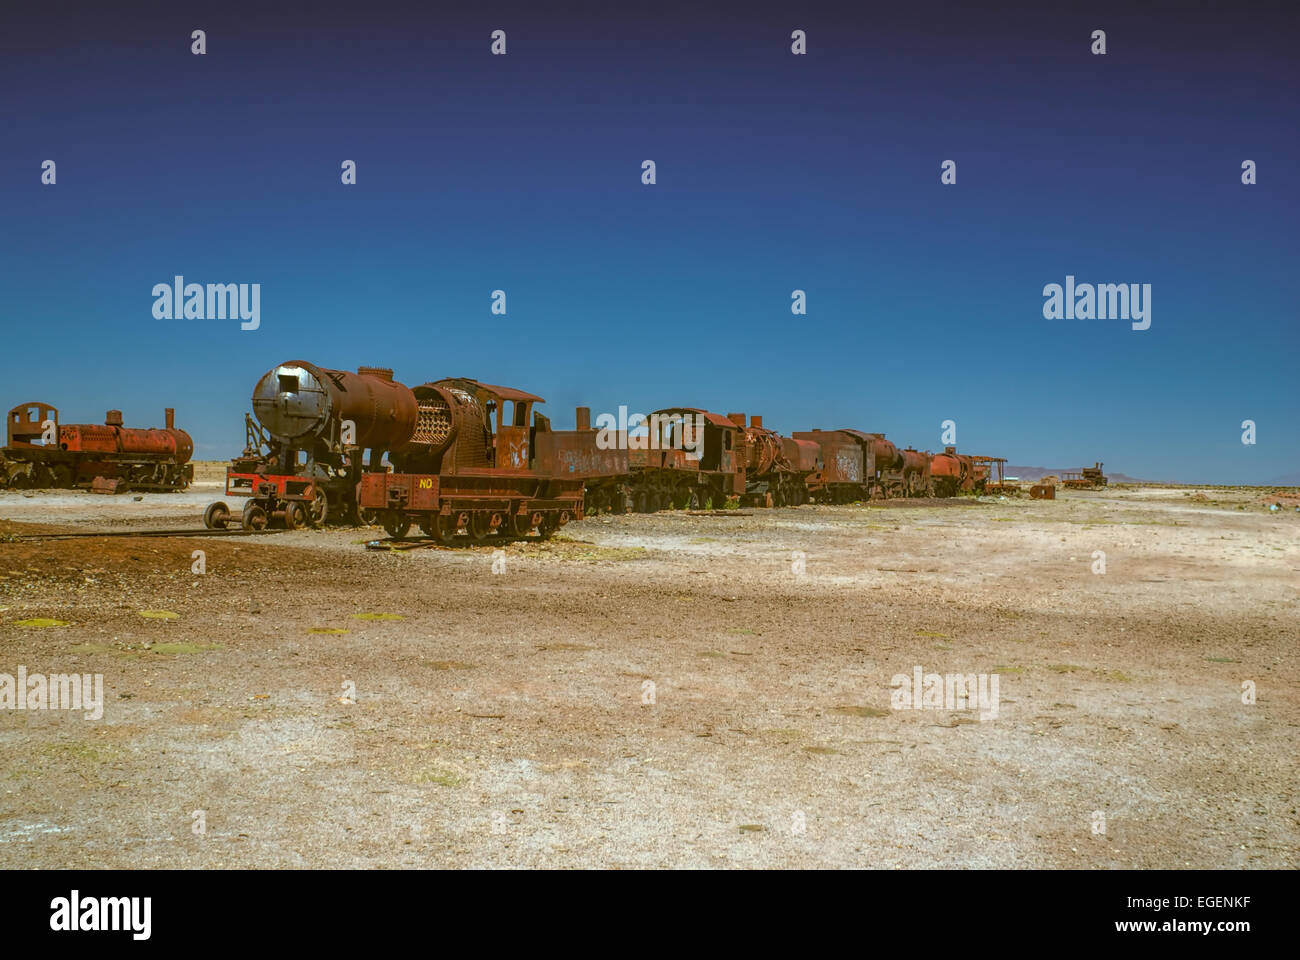 Old locomotive graveyard in desert near Salar de Uyuni in Bolivia Stock Photo